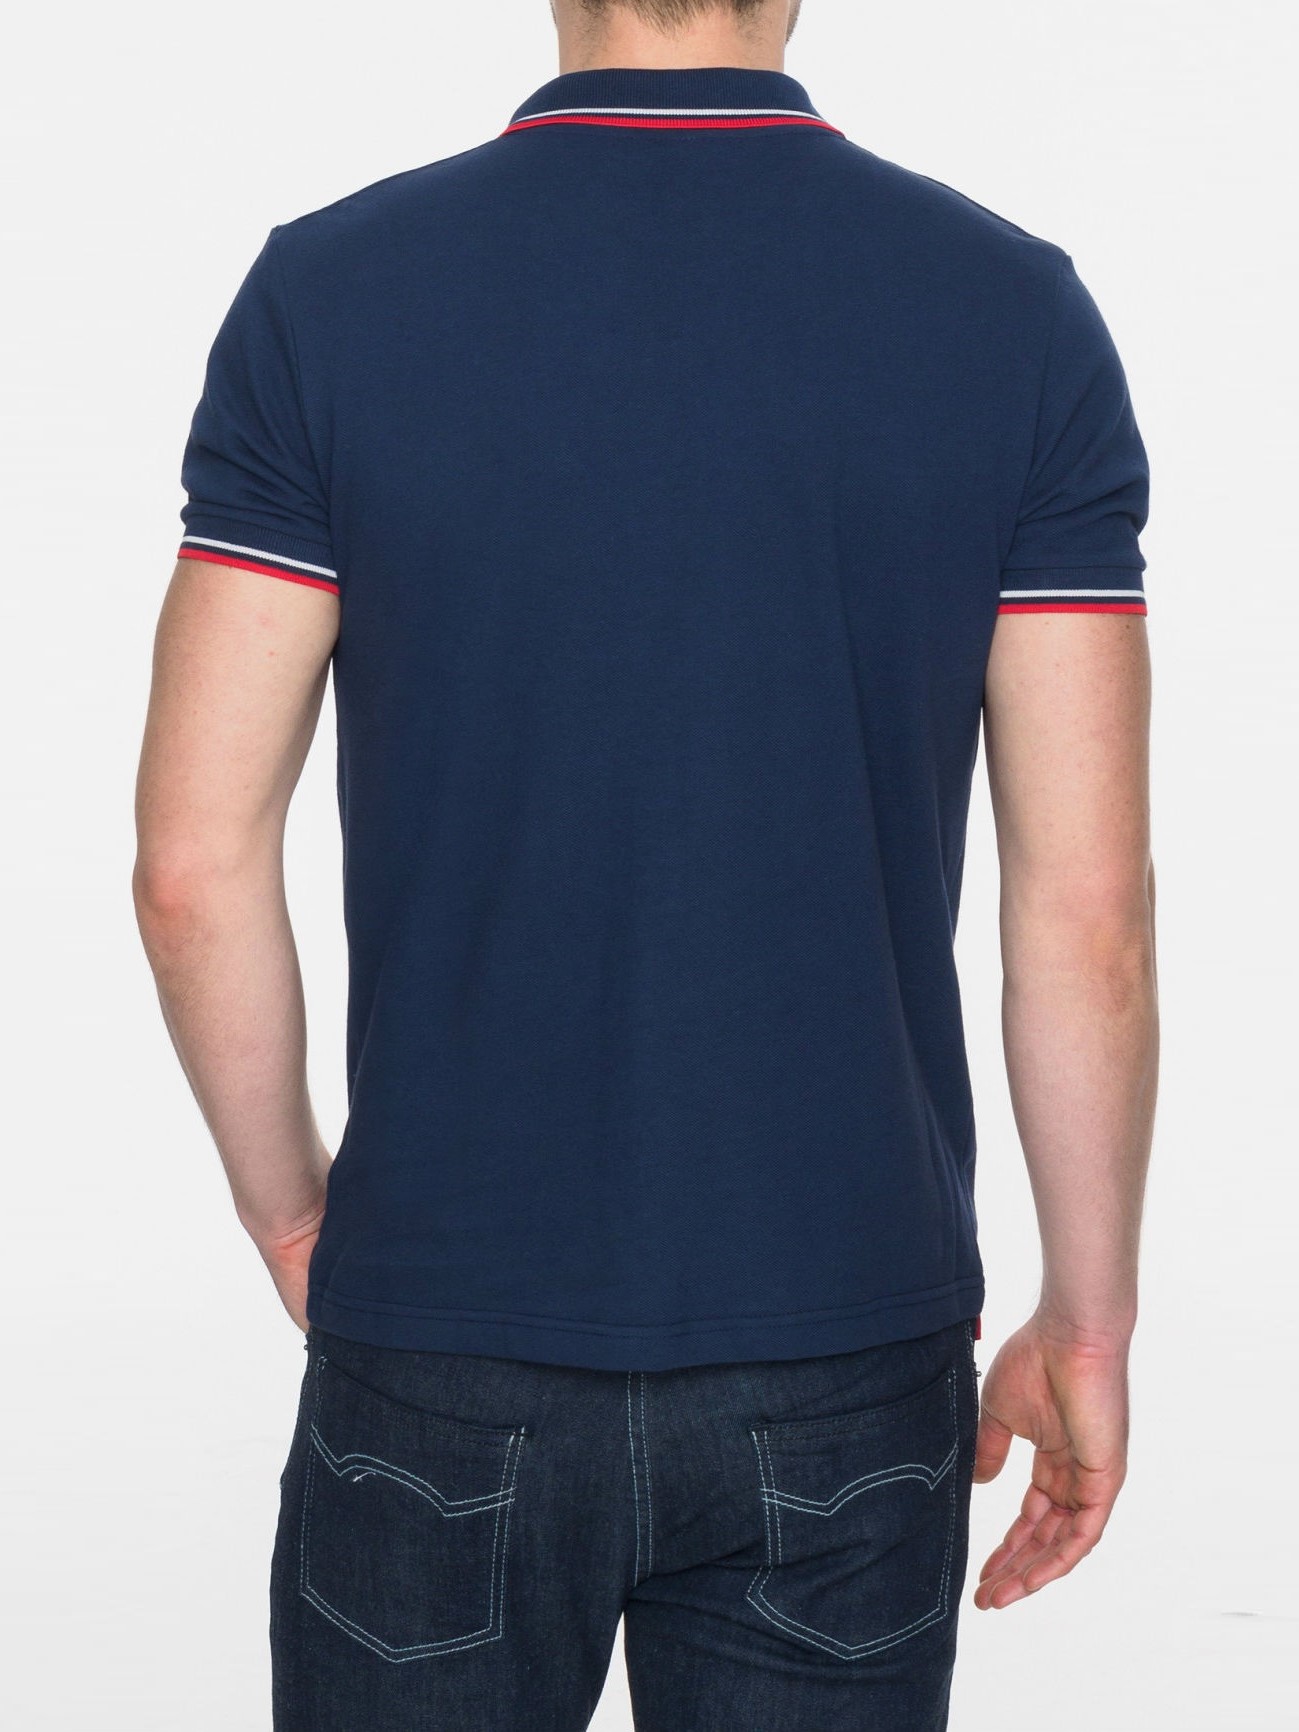 Рубашка Поло Merc Card, navy / red (синяя с красно-белой окантовкой), классическая, хлопковая (пике)